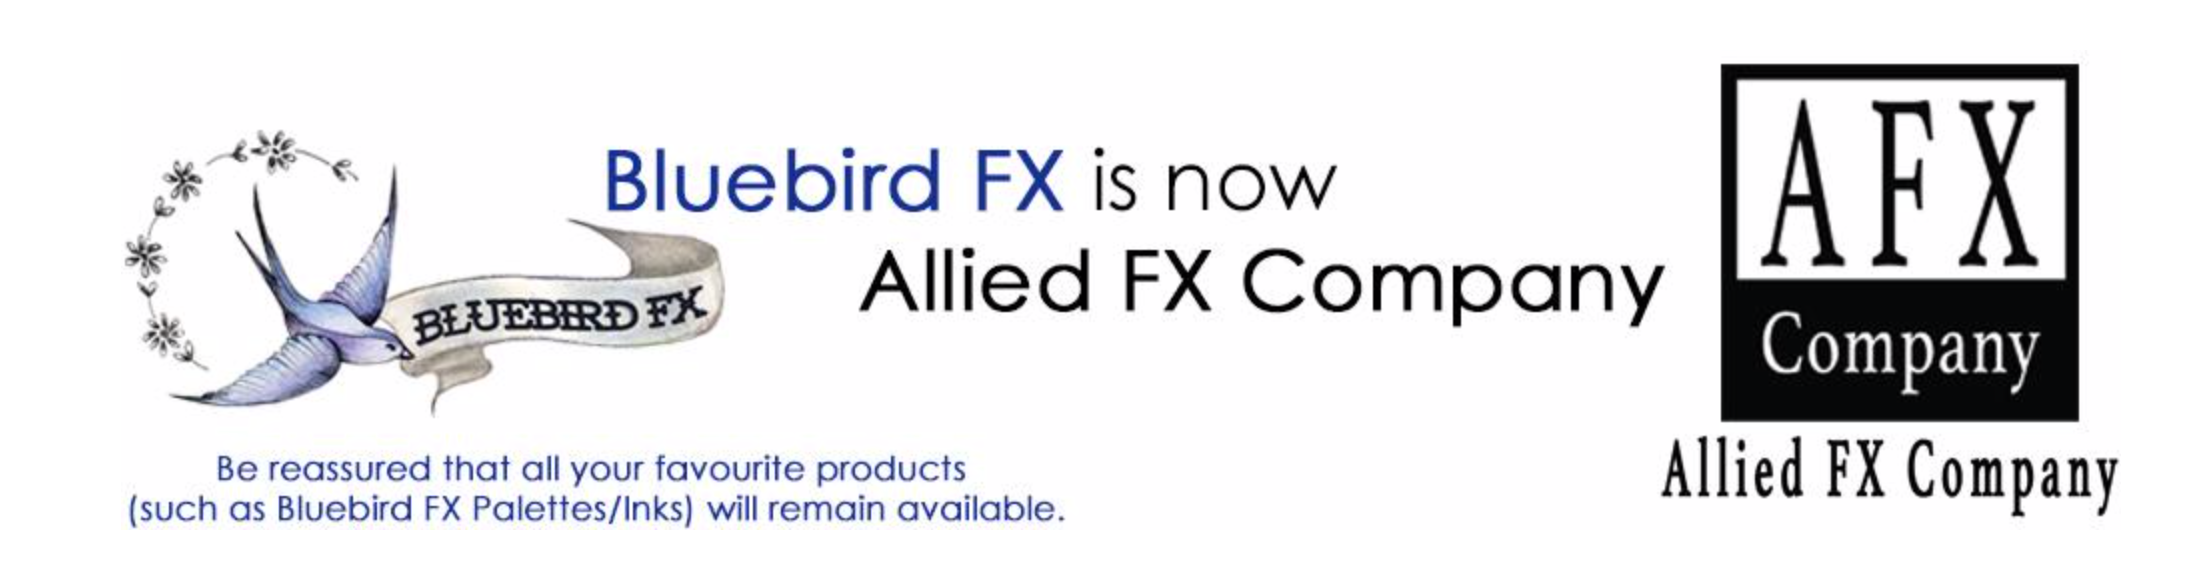 Bluebird / Allied FX